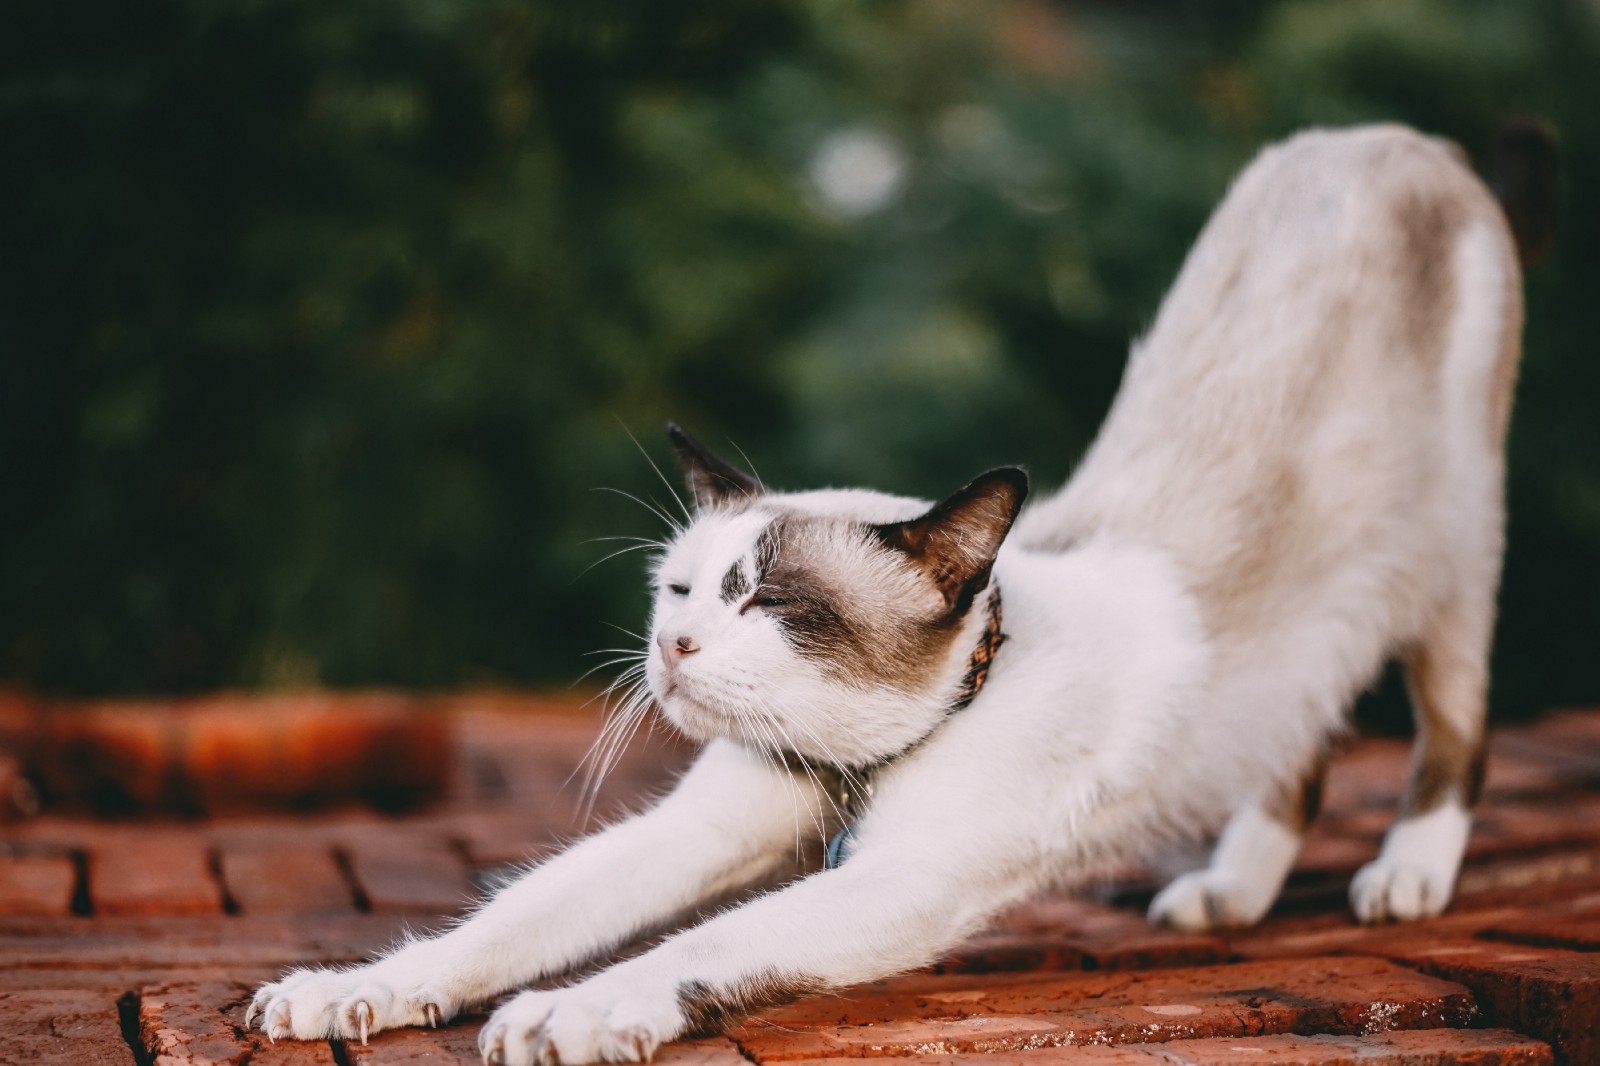 Cute cat stretching